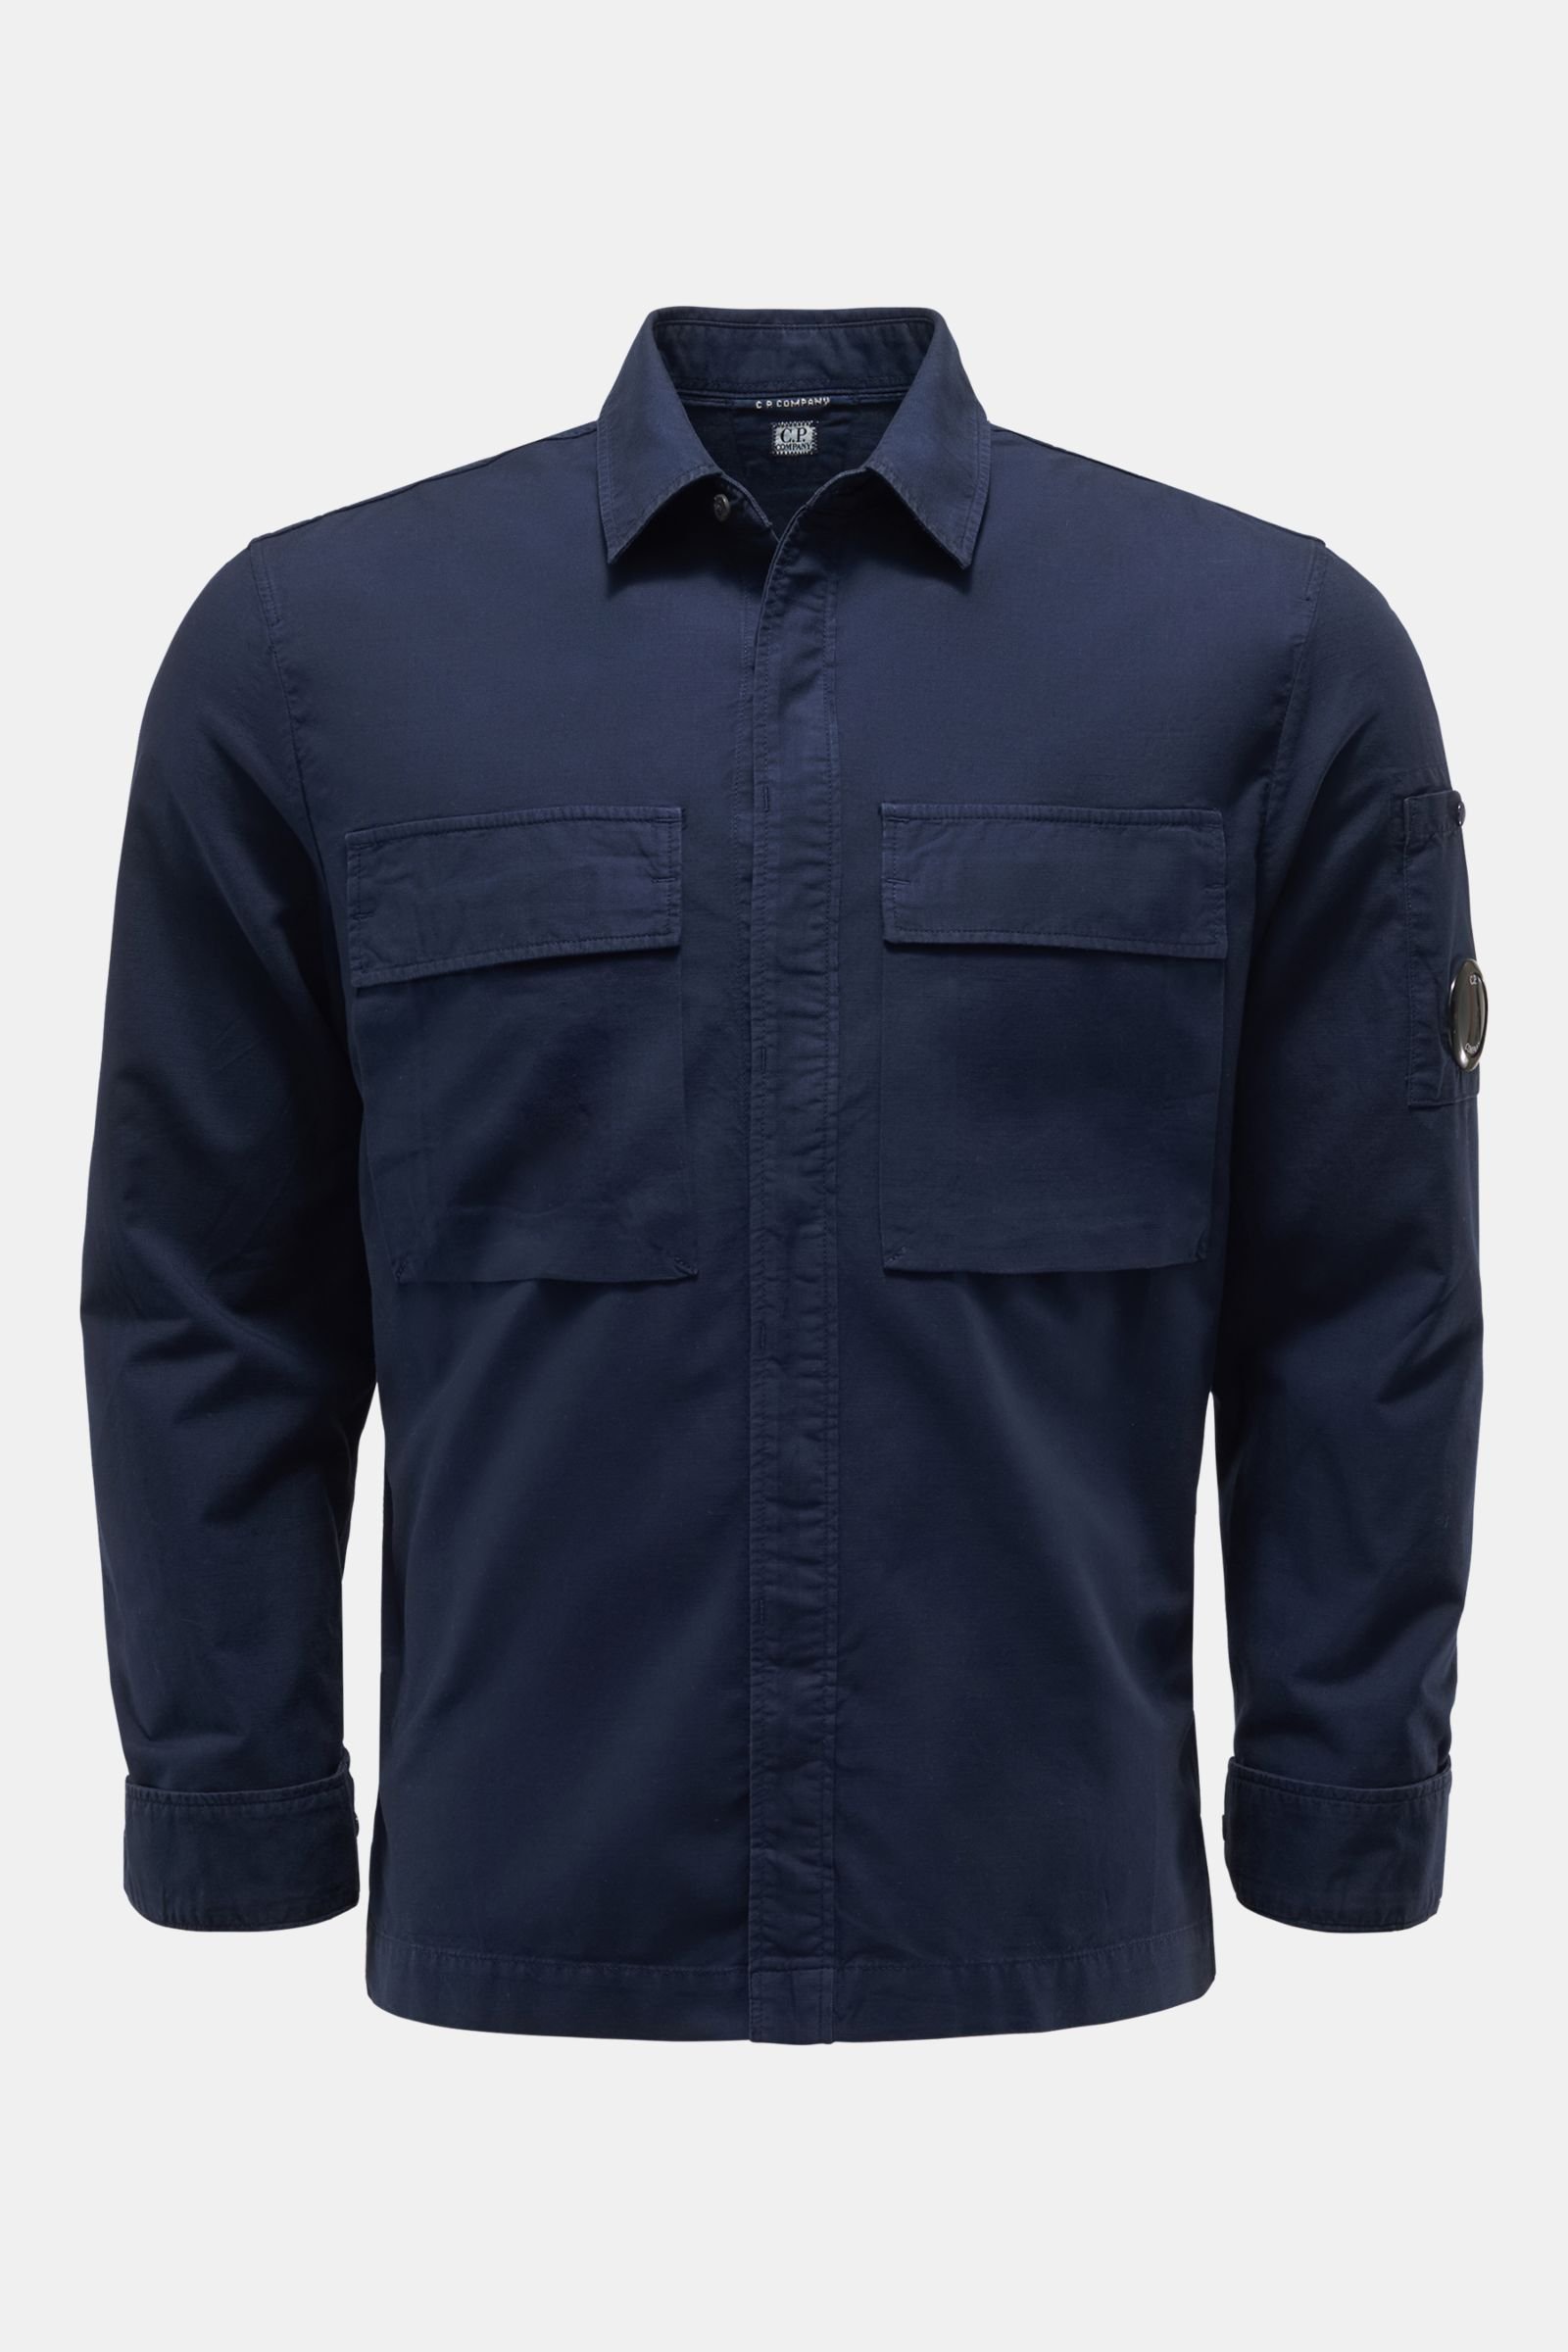 Casual shirt narrow collar navy